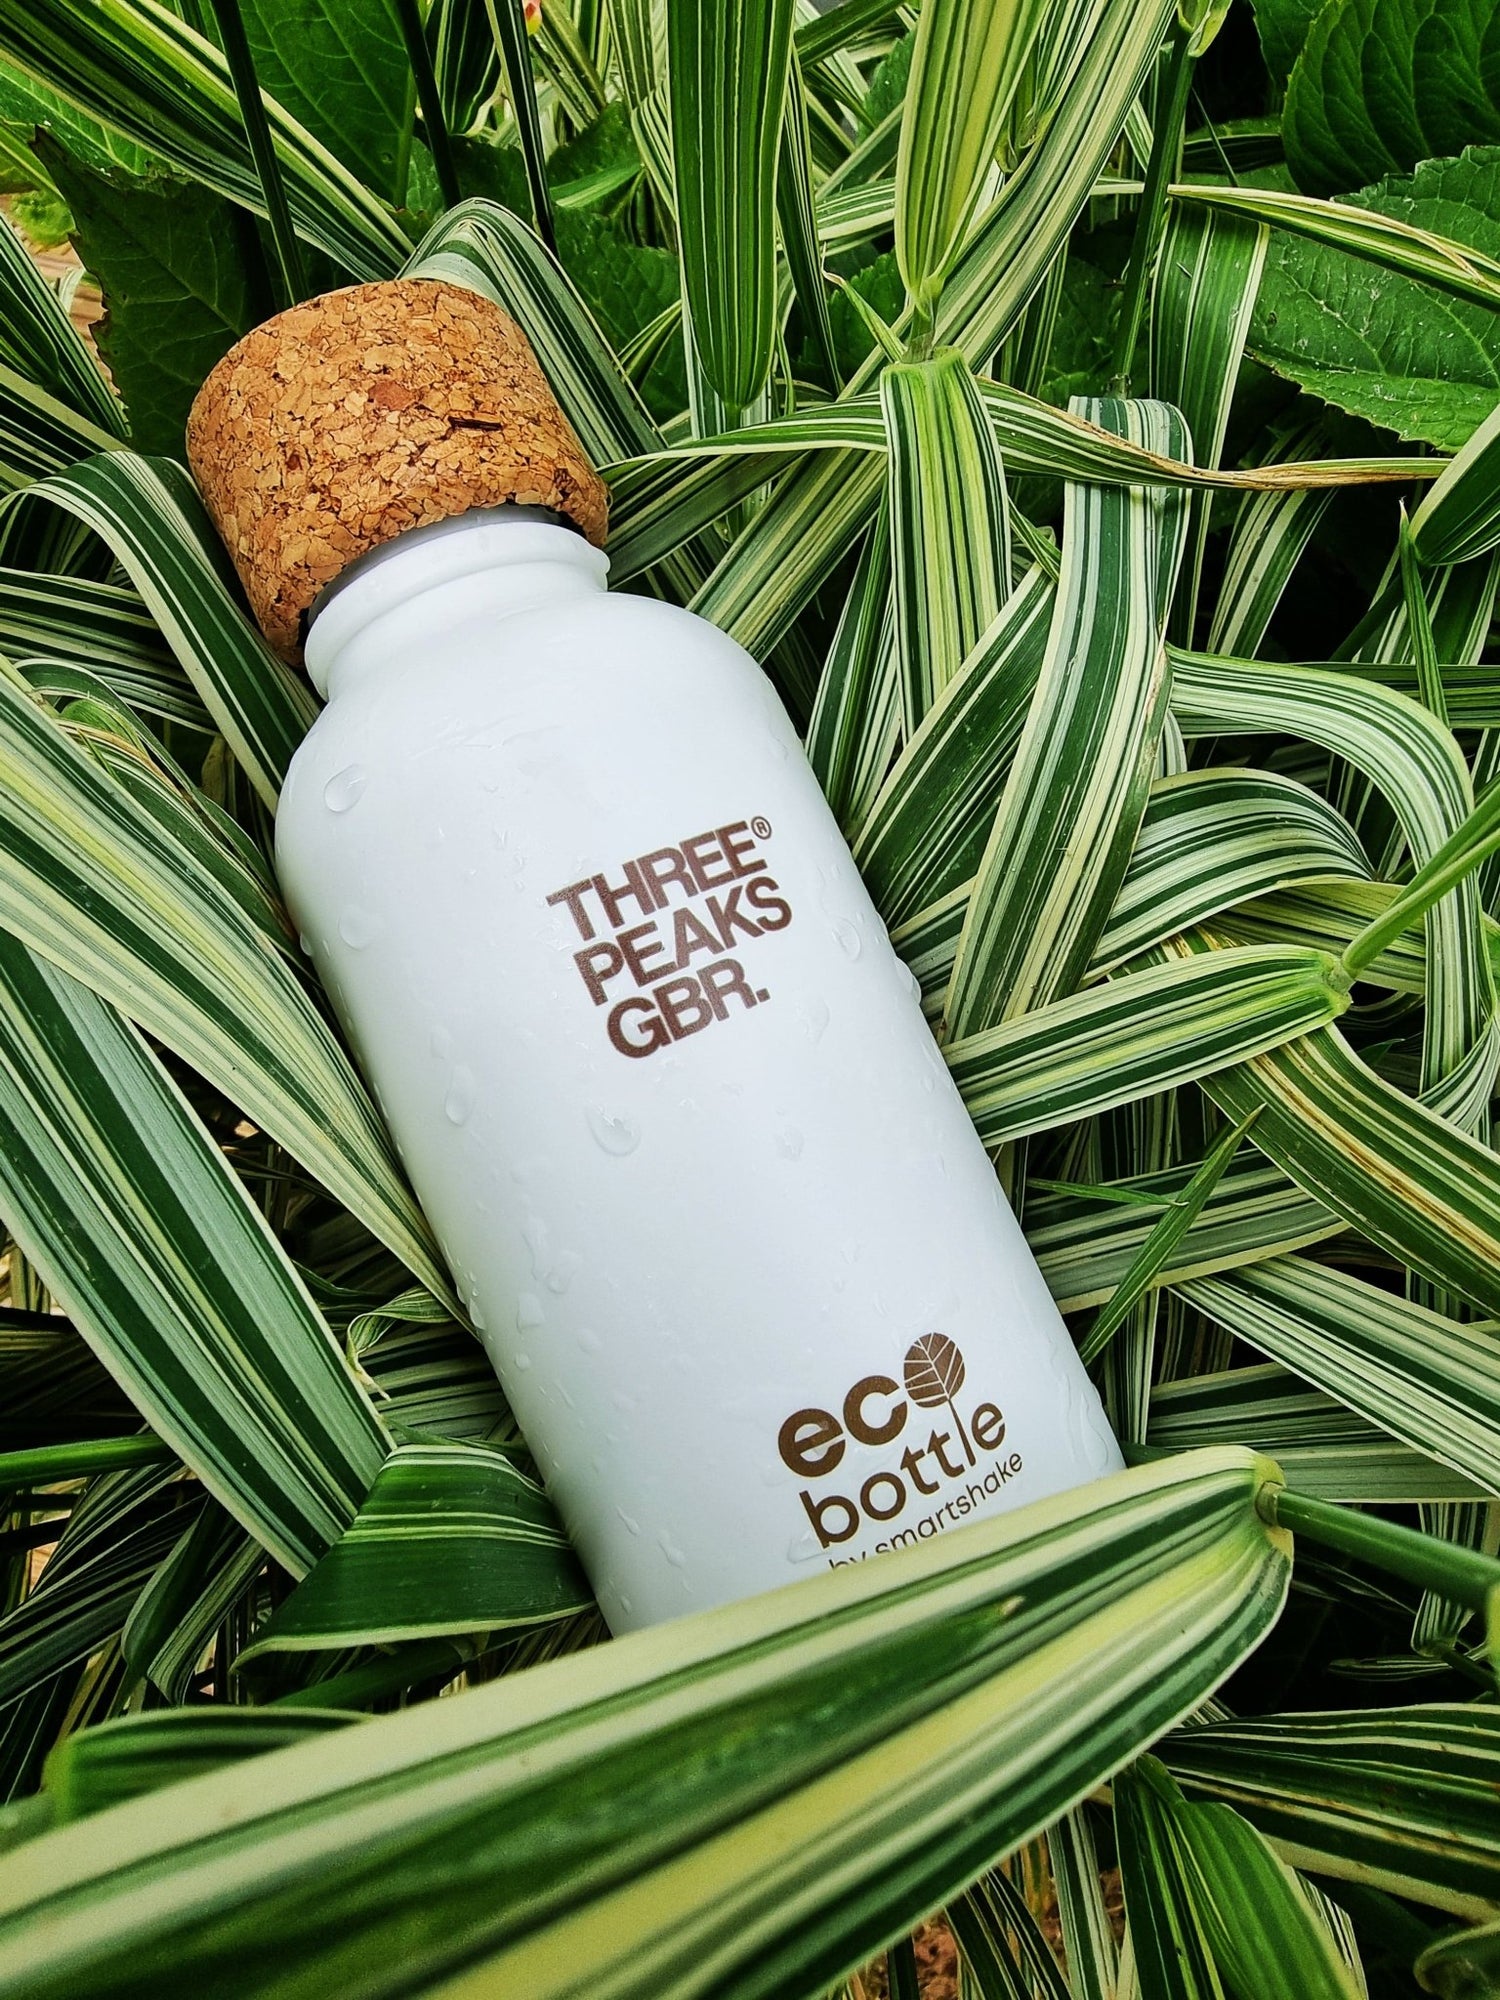 Eco Bottle 650ml - Three Peaks GBR